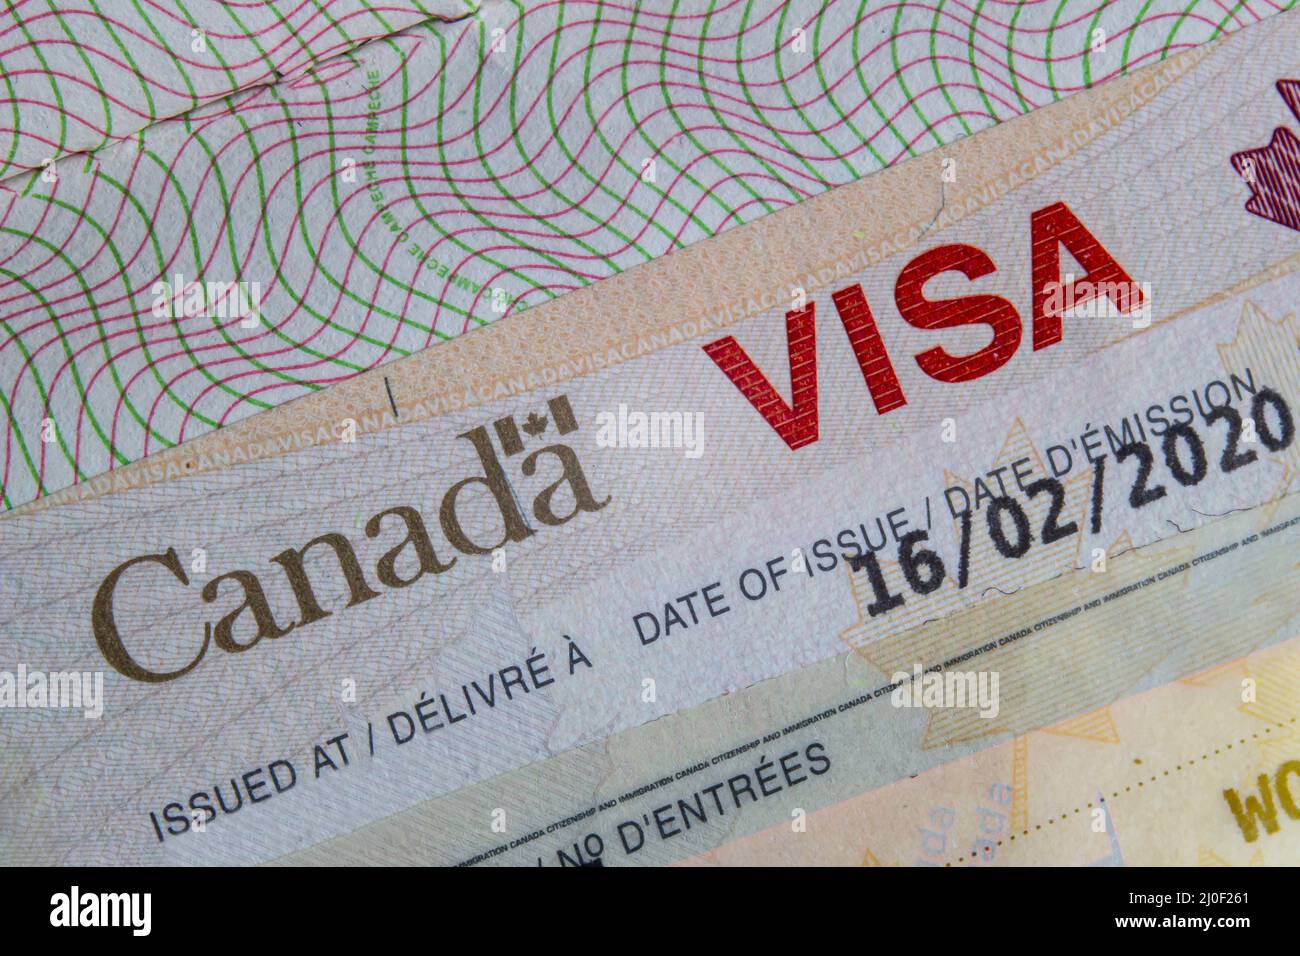 Canada visa Banque de photographies et d'images à haute résolution - Alamy